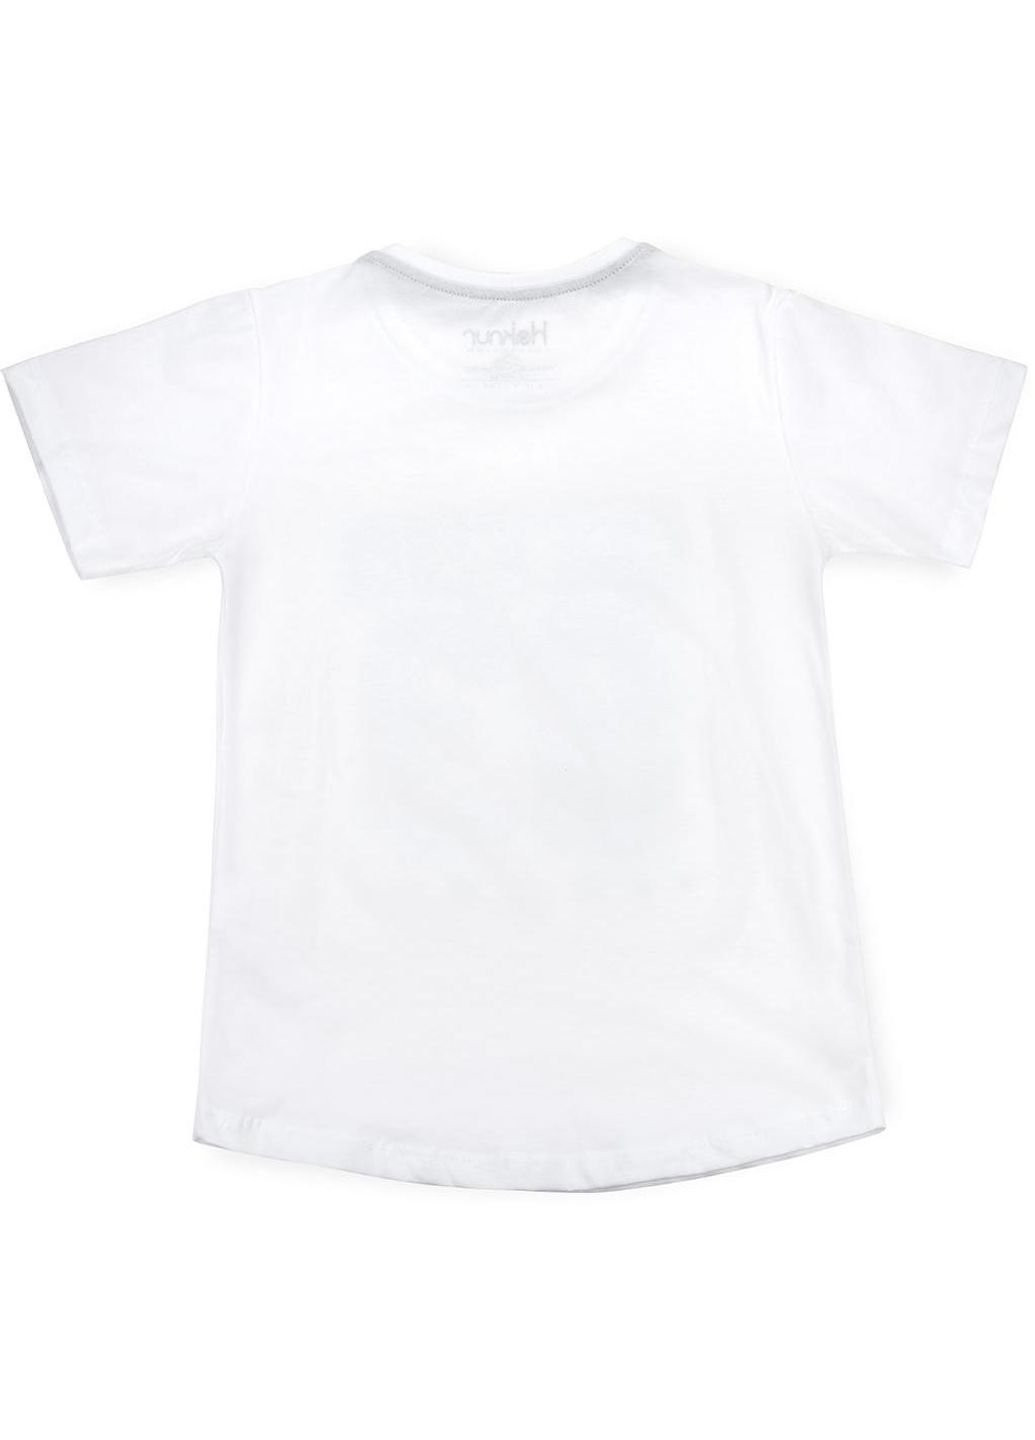 Біла демісезонна футболка дитяча "cool & free" (6547-134b-white) Haknur